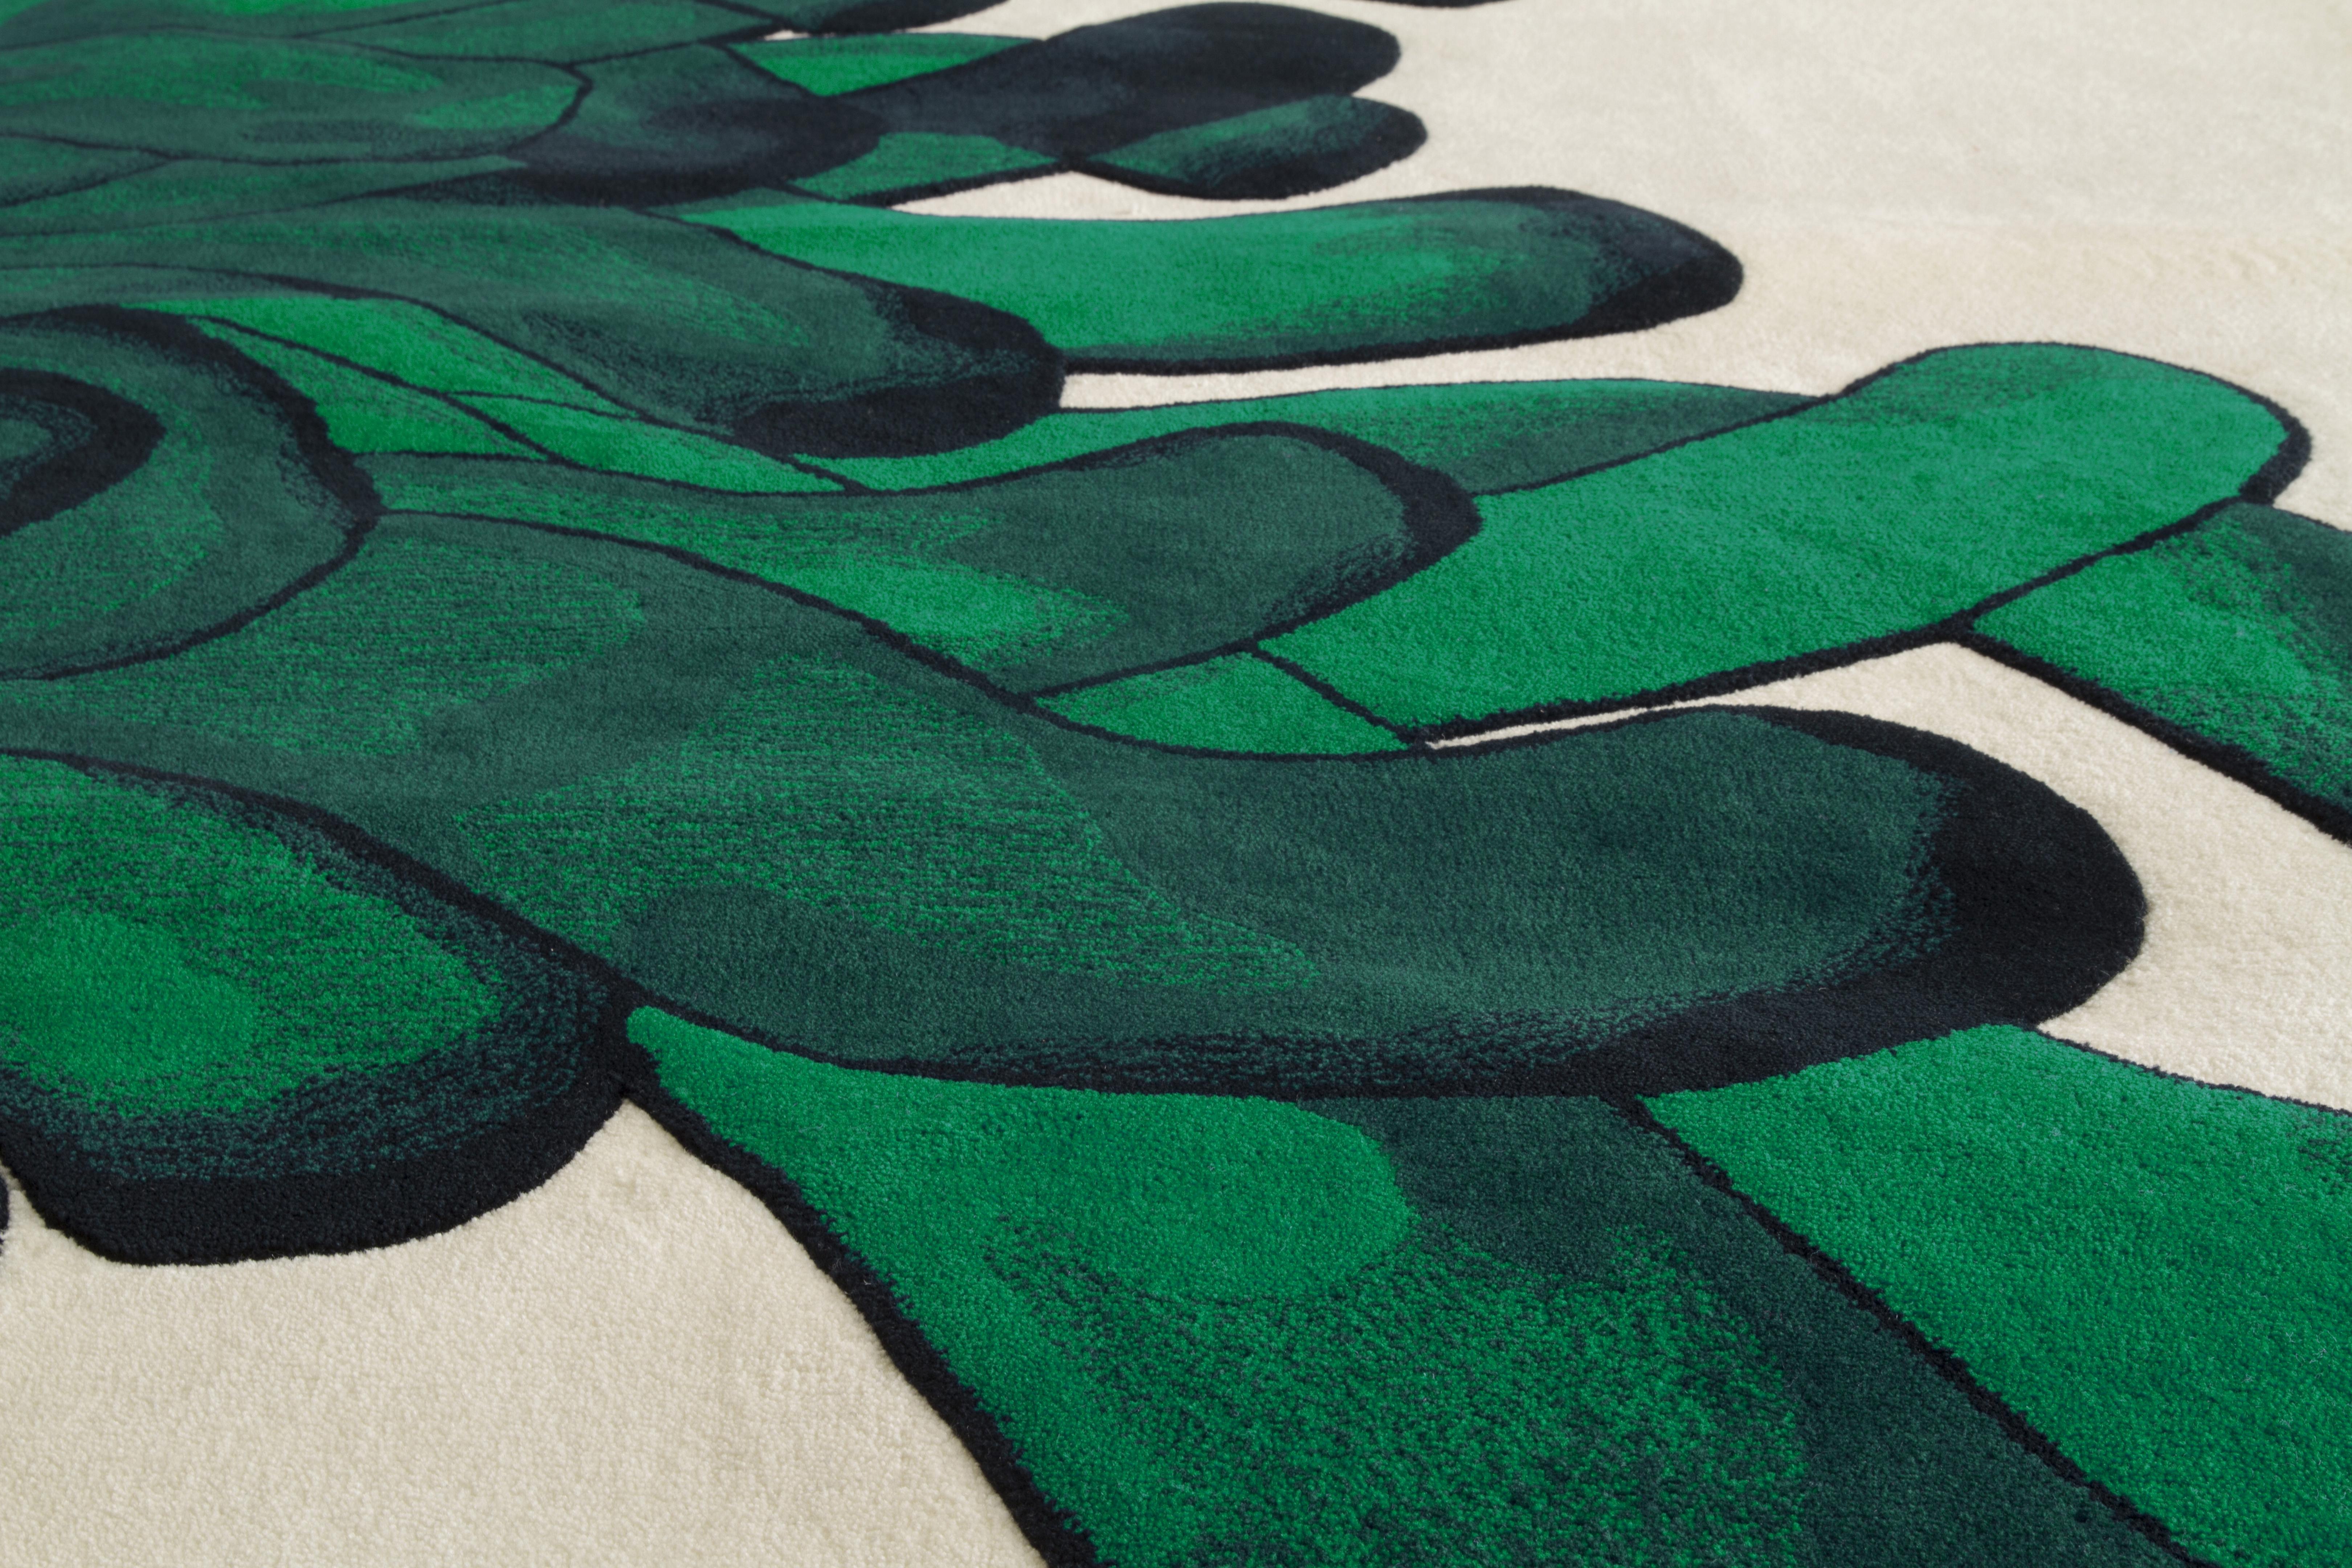 Anemone ist ein Teppich, der von einem Gemälde inspiriert wurde, in dem die Pinselstriche die langsamen Bewegungen von Seeanemonen nachahmen.
Die verschiedenen Blau-, Rot-, Grau- oder Grüntöne des Aquarells werden mit Wolle perfekt umgesetzt.
Jede